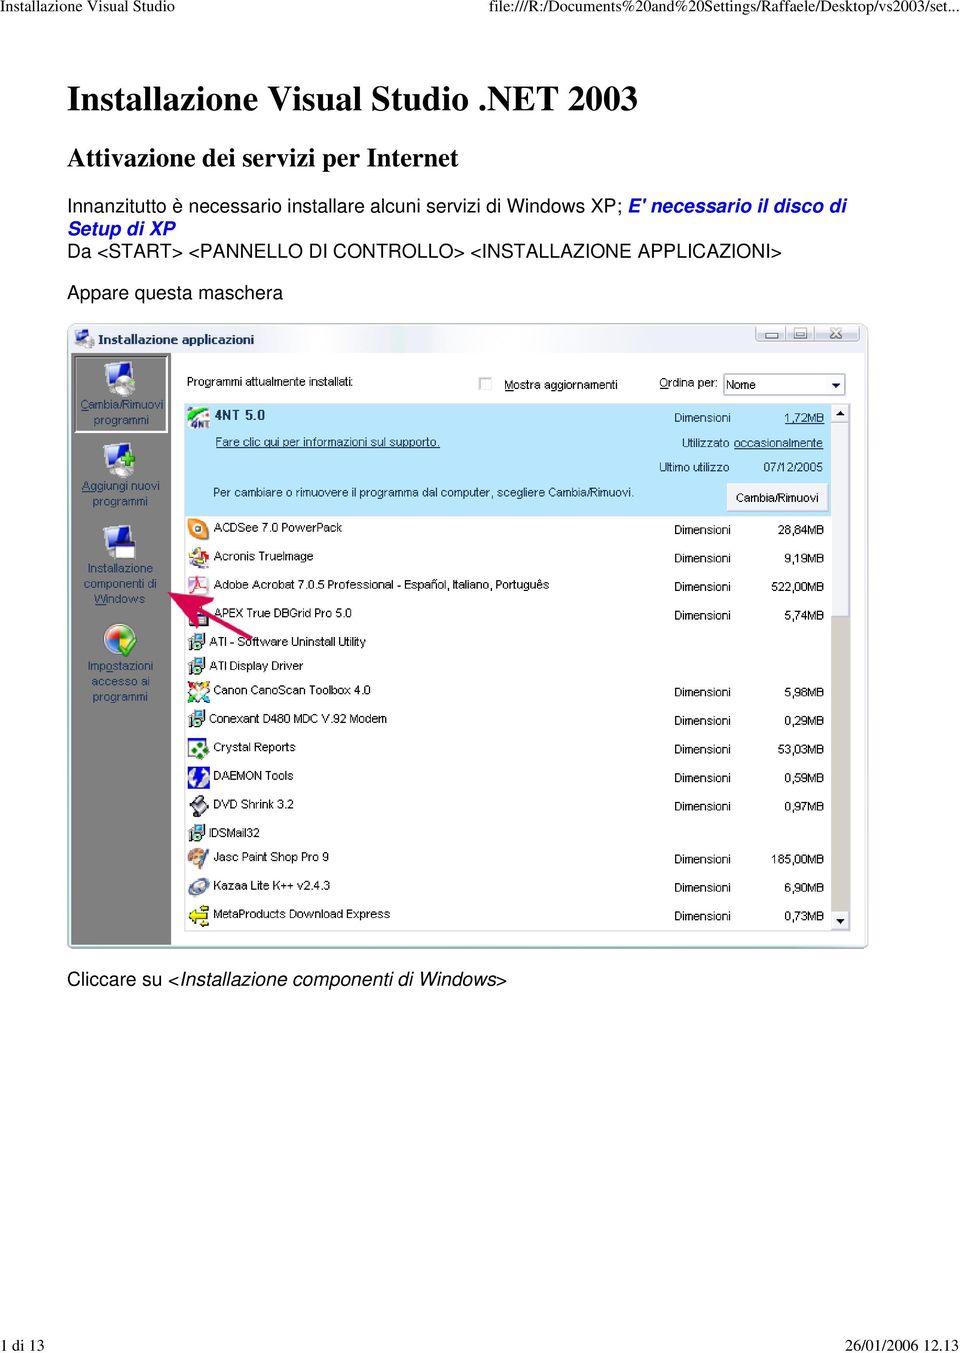 alcuni servizi di Windows XP; E' necessario il disco di Setup di XP Da <START>